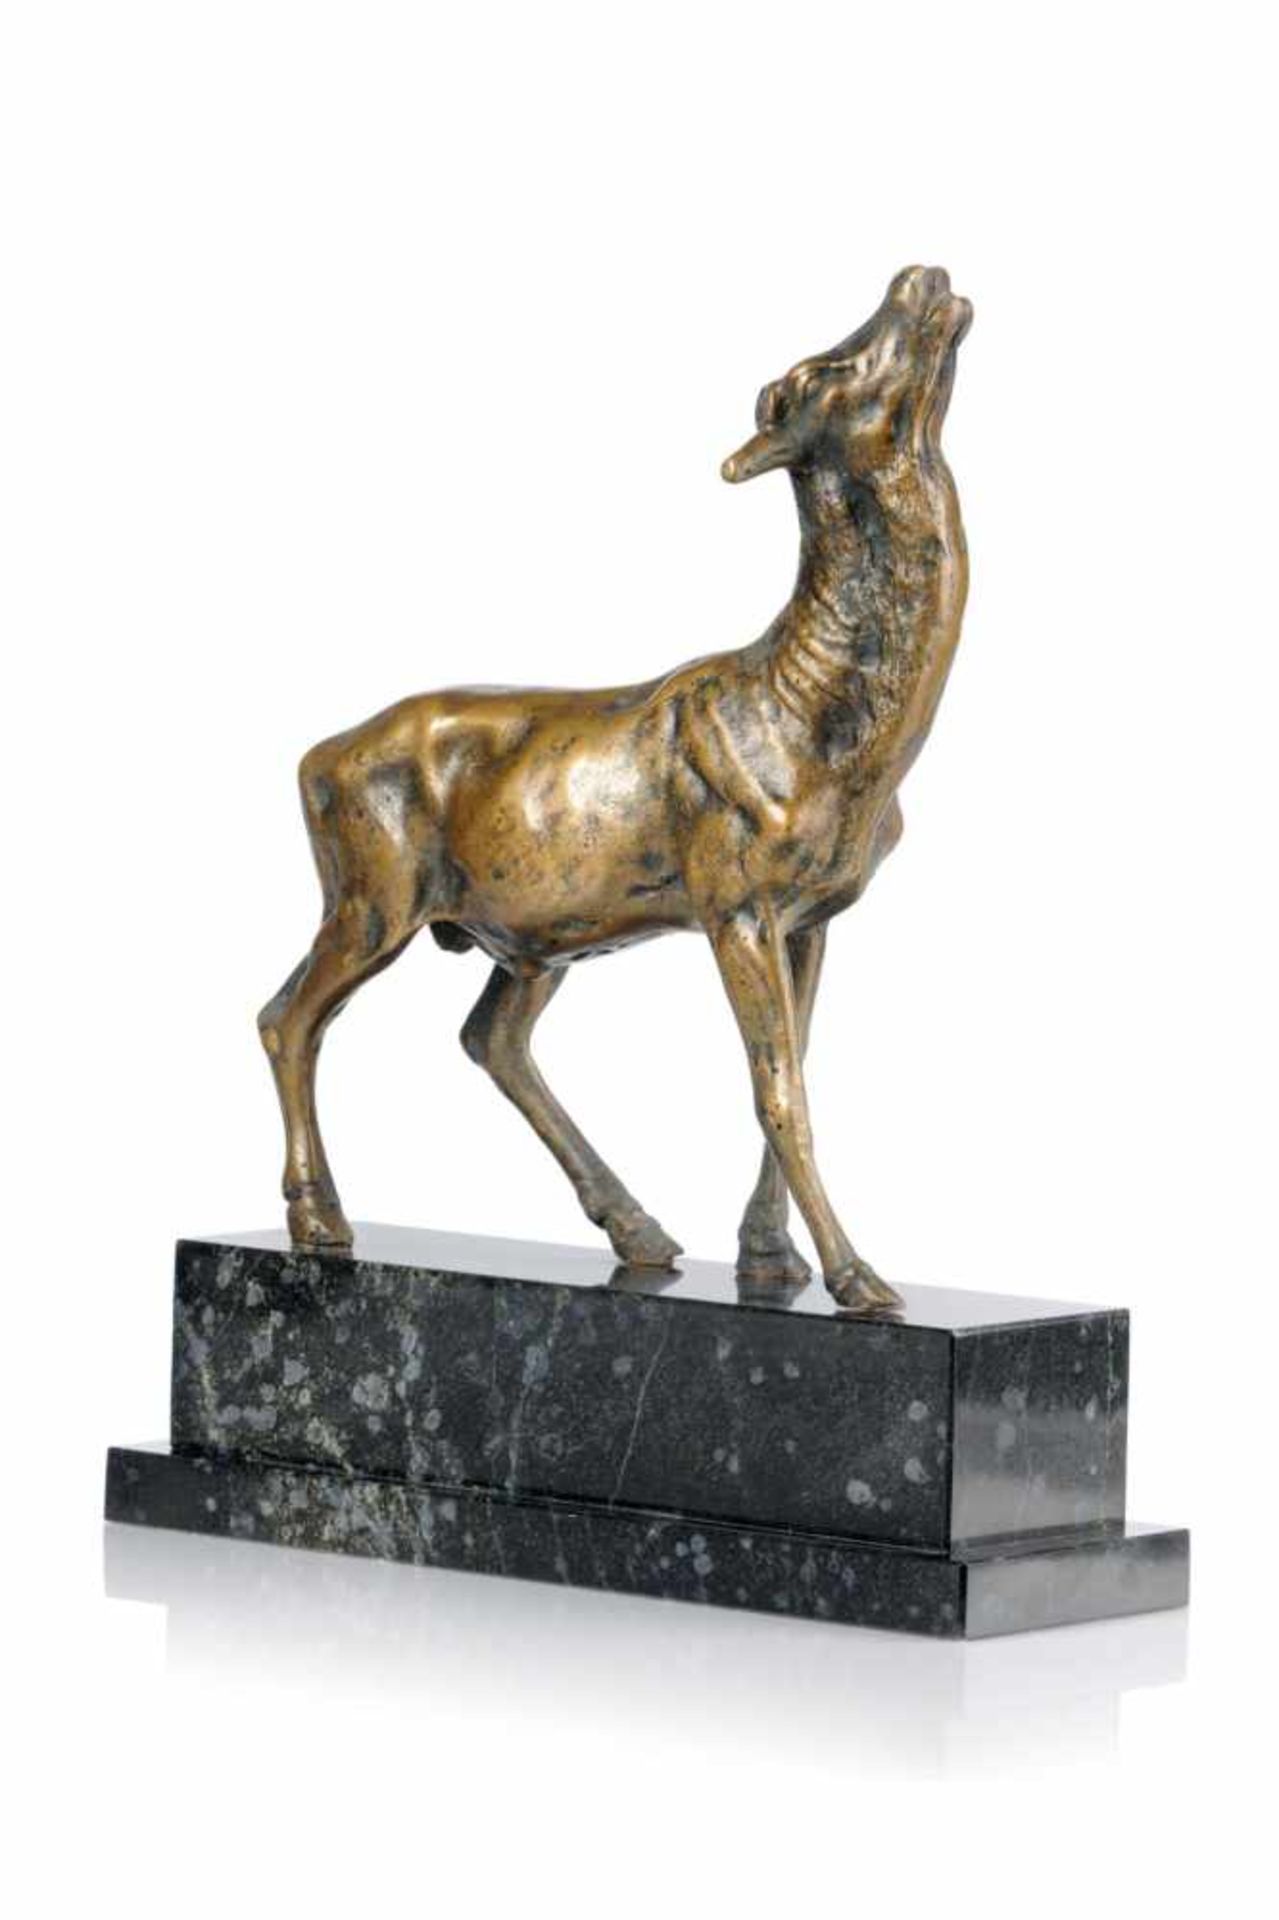 Antilope. Spätes 19./20. Jh.Bronze, partiell schwarzbraun patiniert und auf einen quaderförmigen